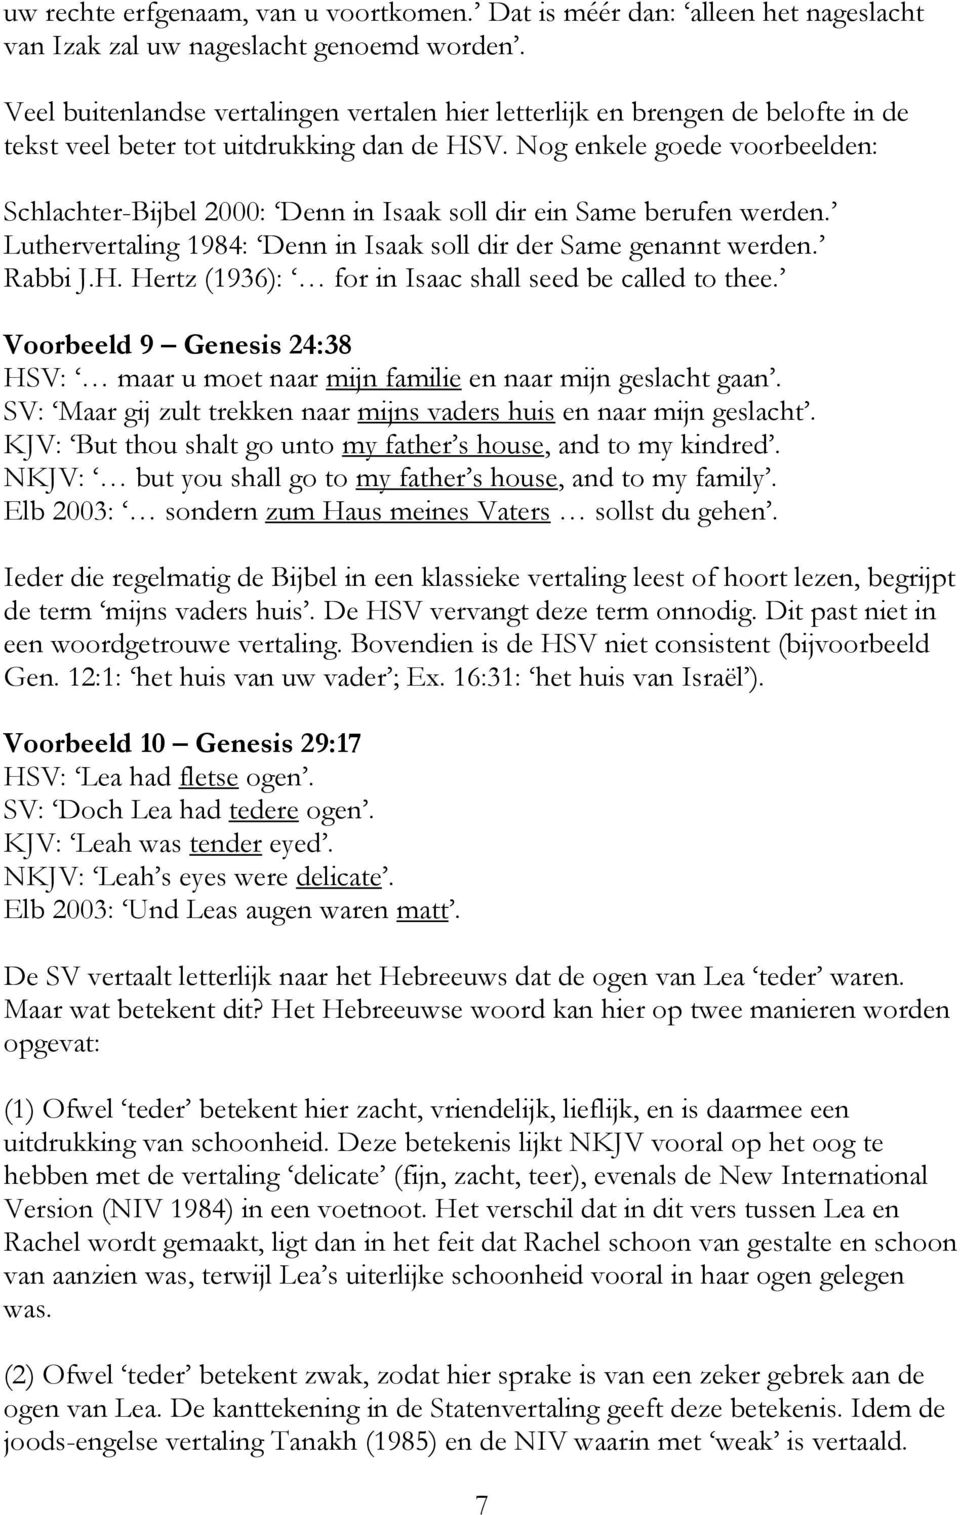 Nog enkele goede voorbeelden: Schlachter-Bijbel 2000: Denn in Isaak soll dir ein Same berufen werden. Luthervertaling 1984: Denn in Isaak soll dir der Same genannt werden. Rabbi J.H.